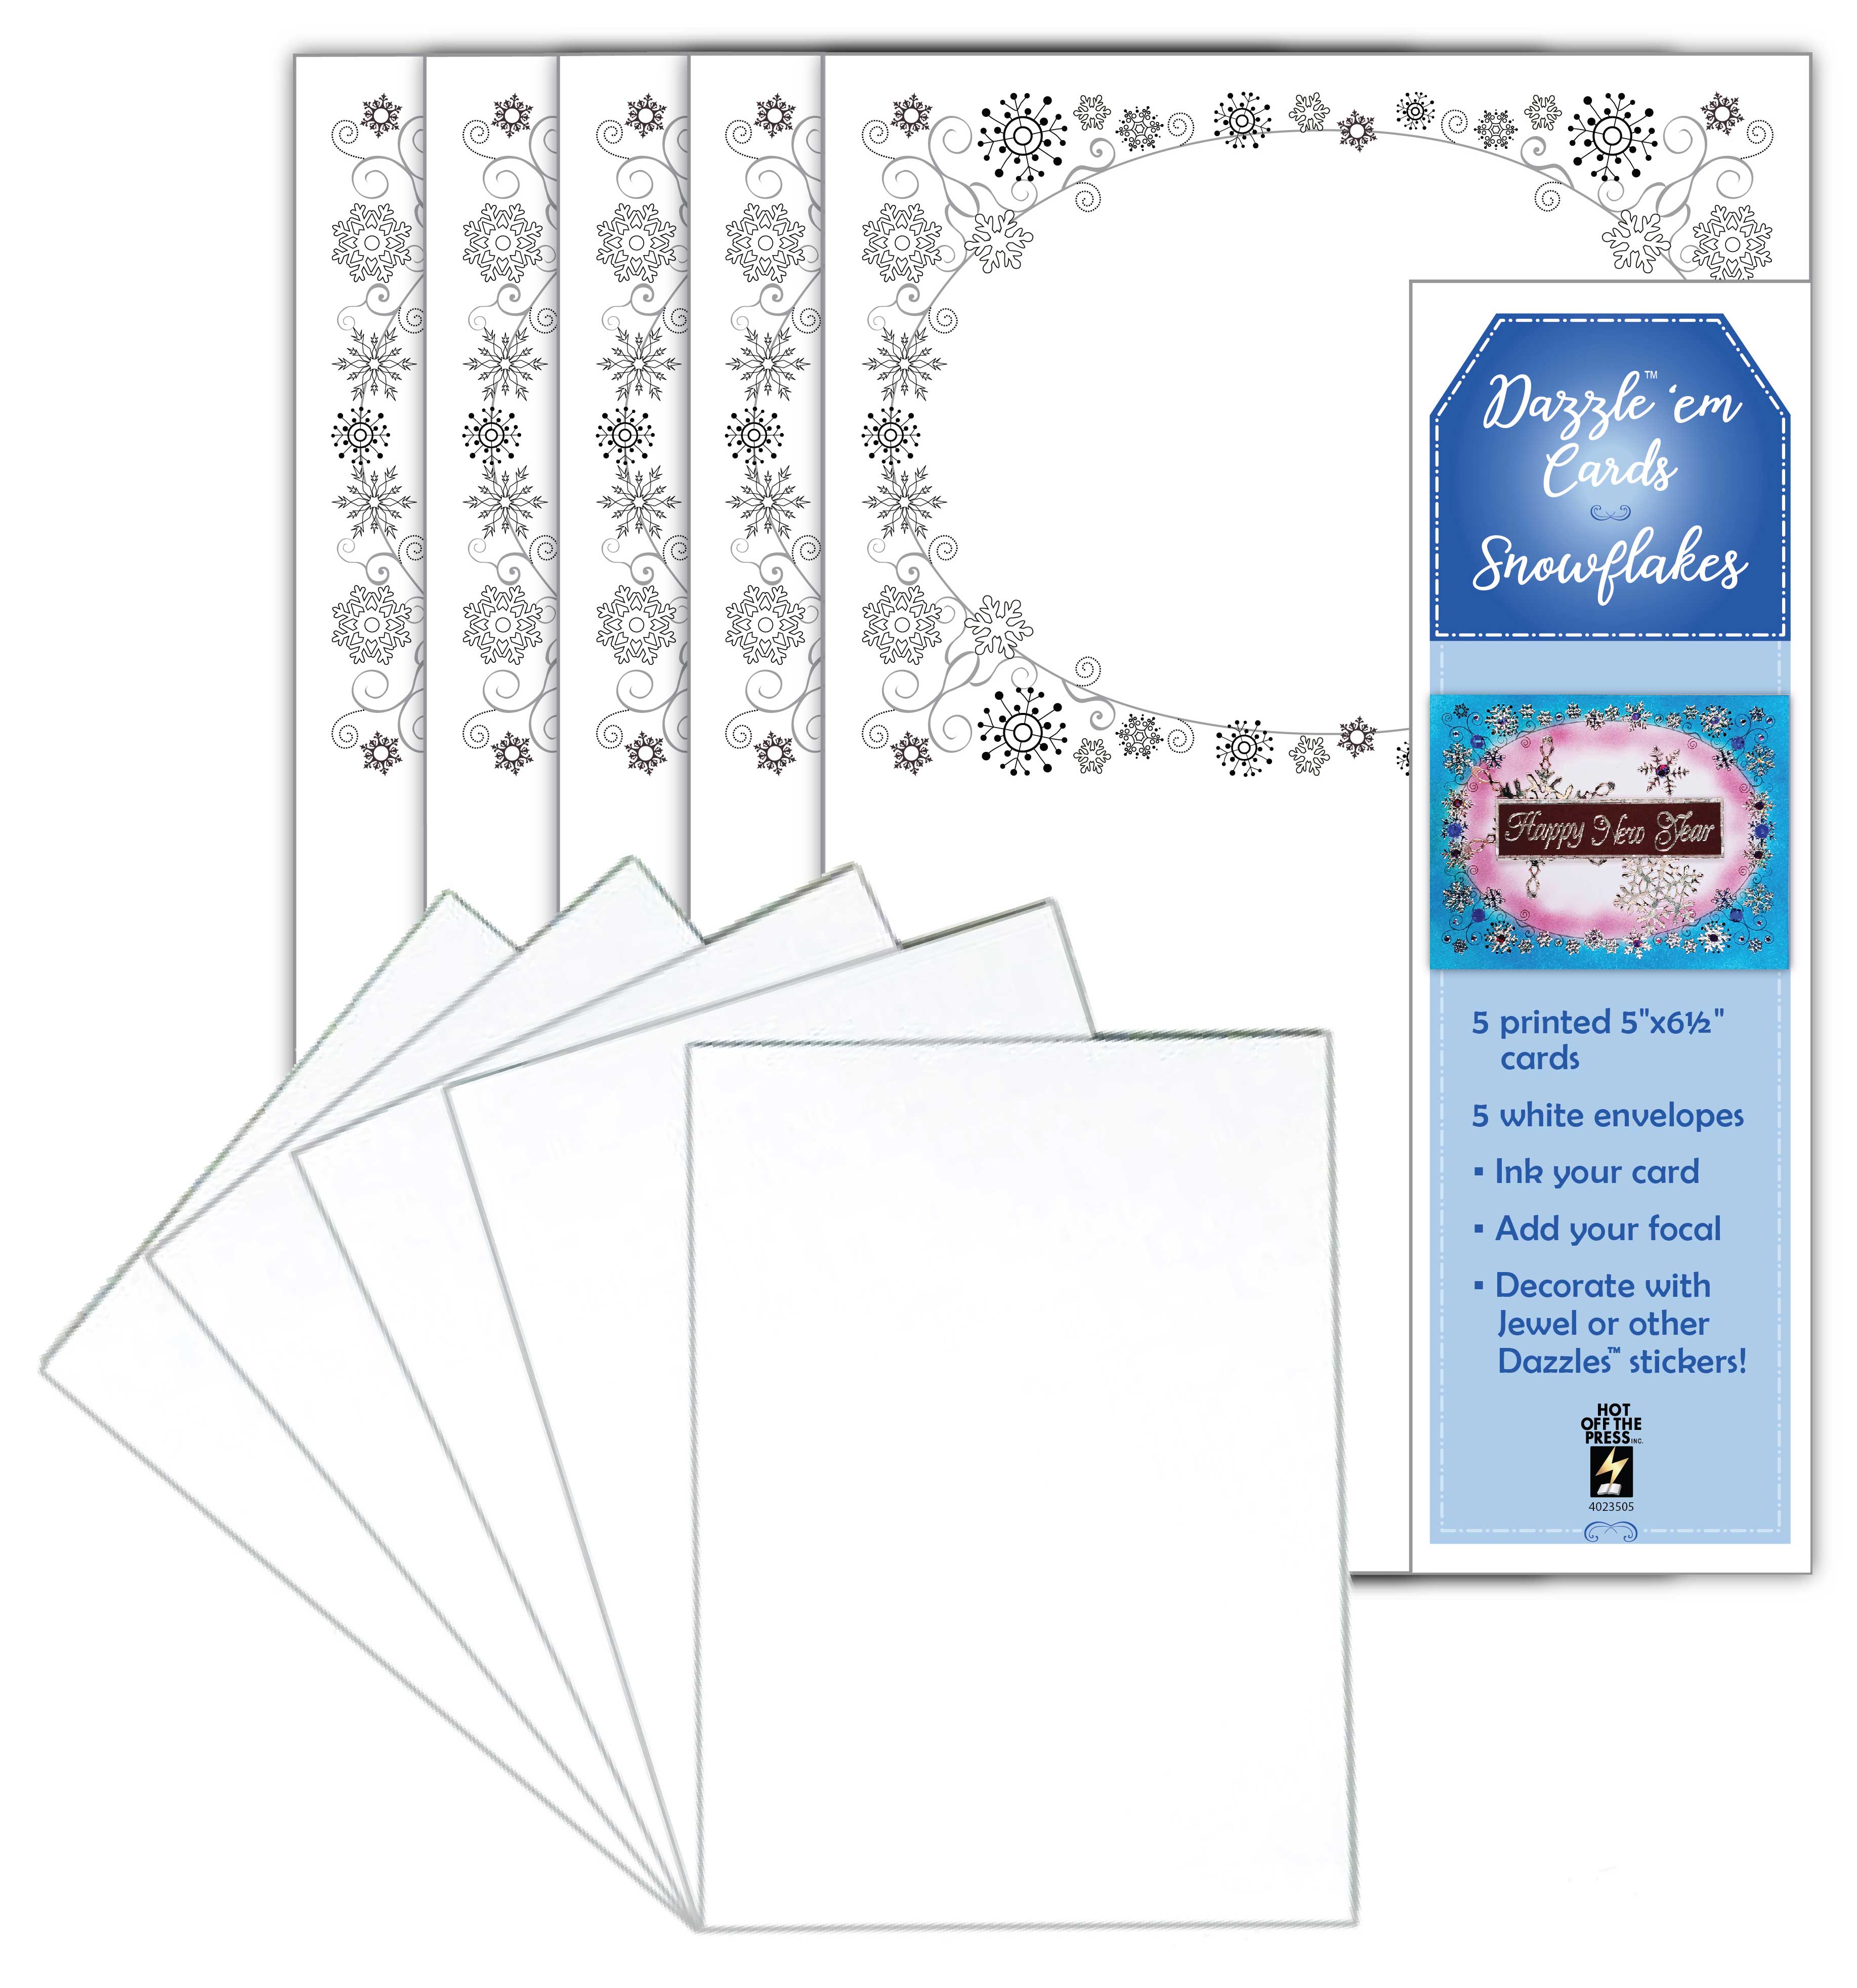 Dazzle 'em Cards Snowflakes, 5 cards & envelopes